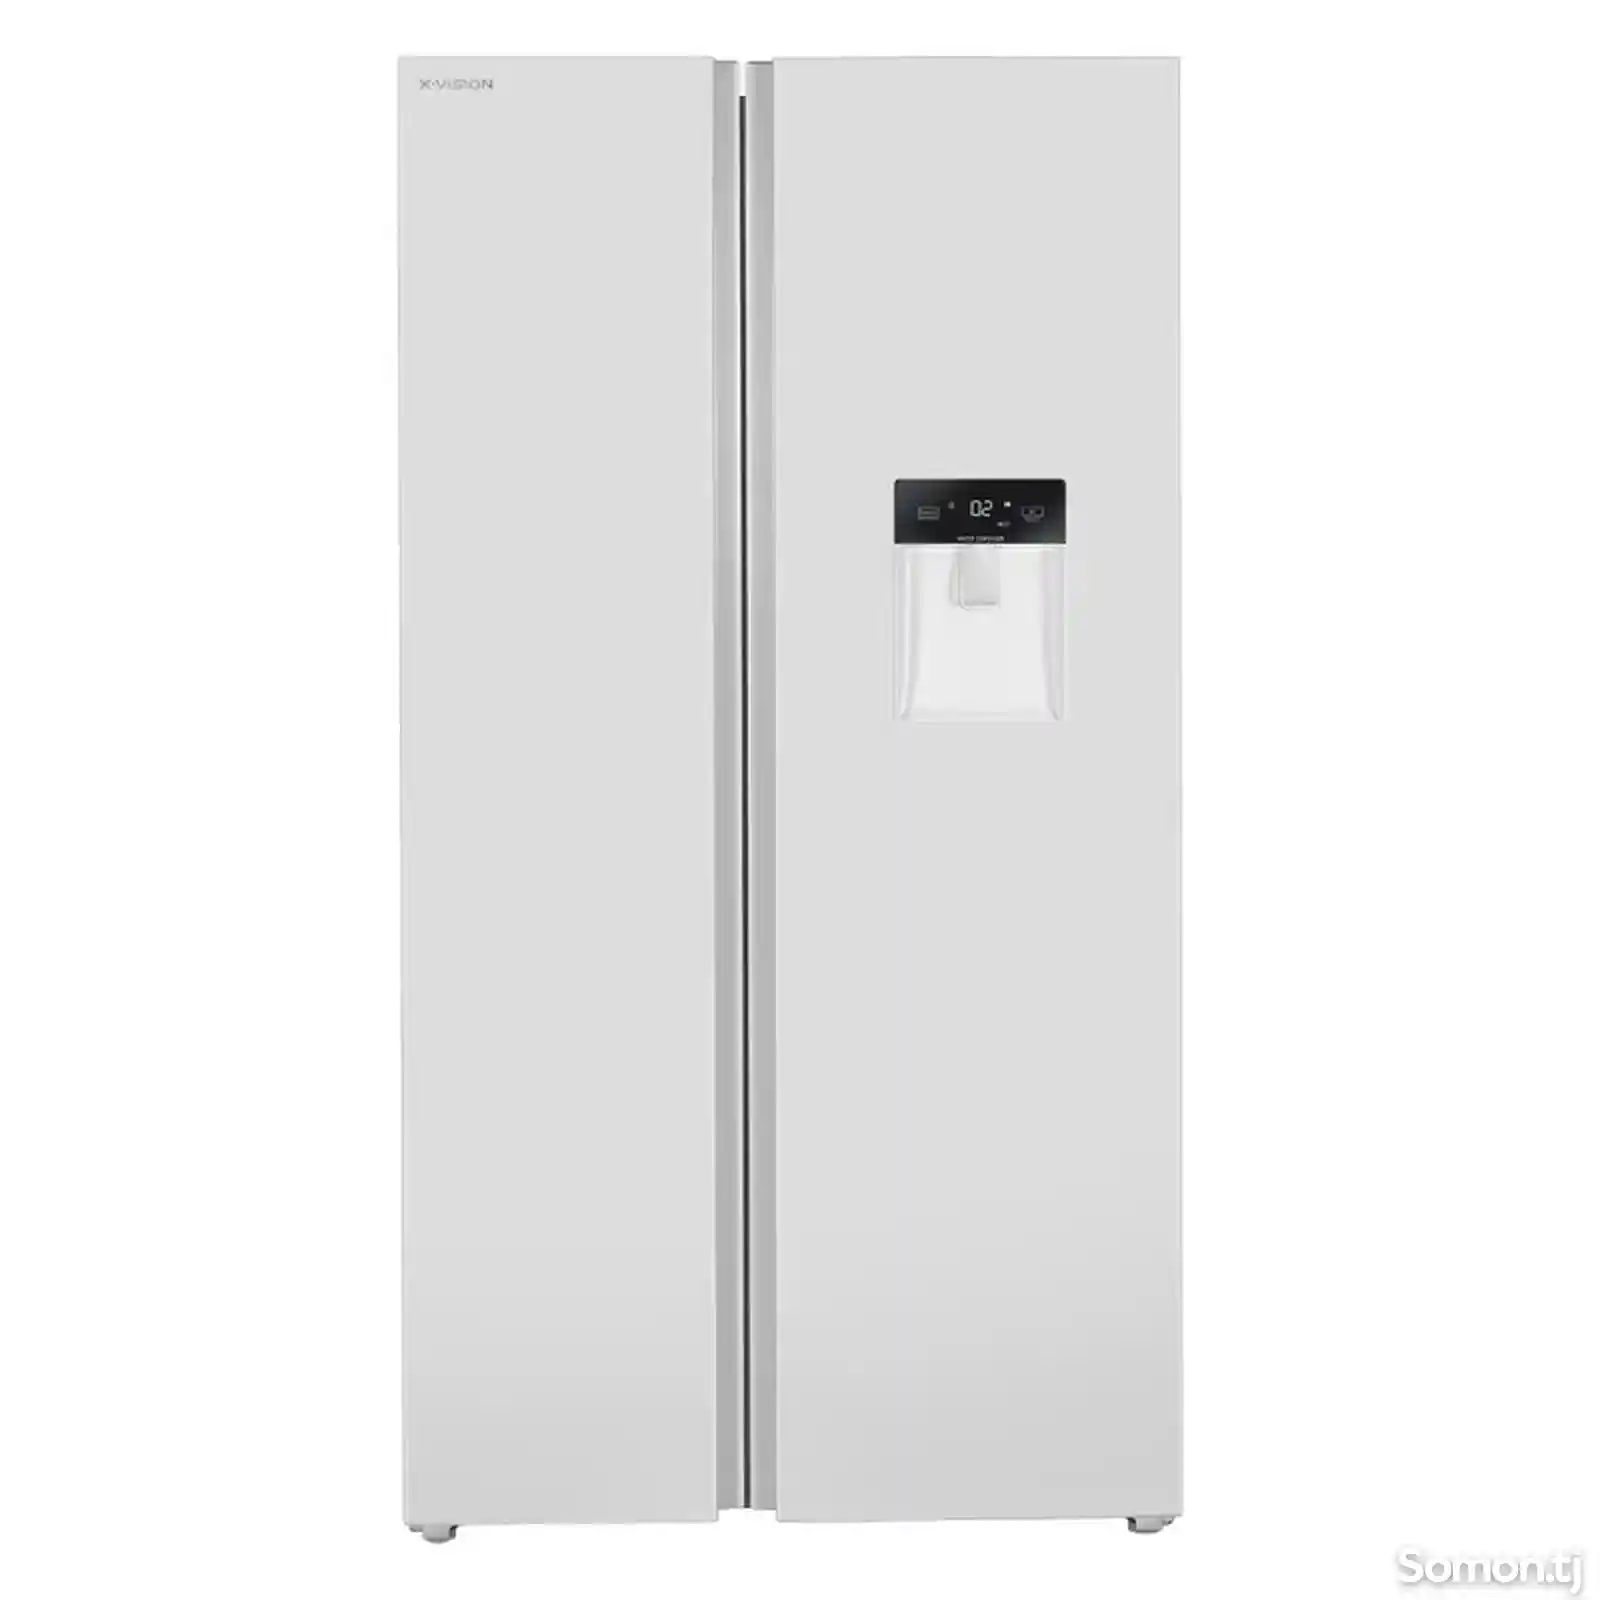 Иранское холодильники X-VISION на заказ-1